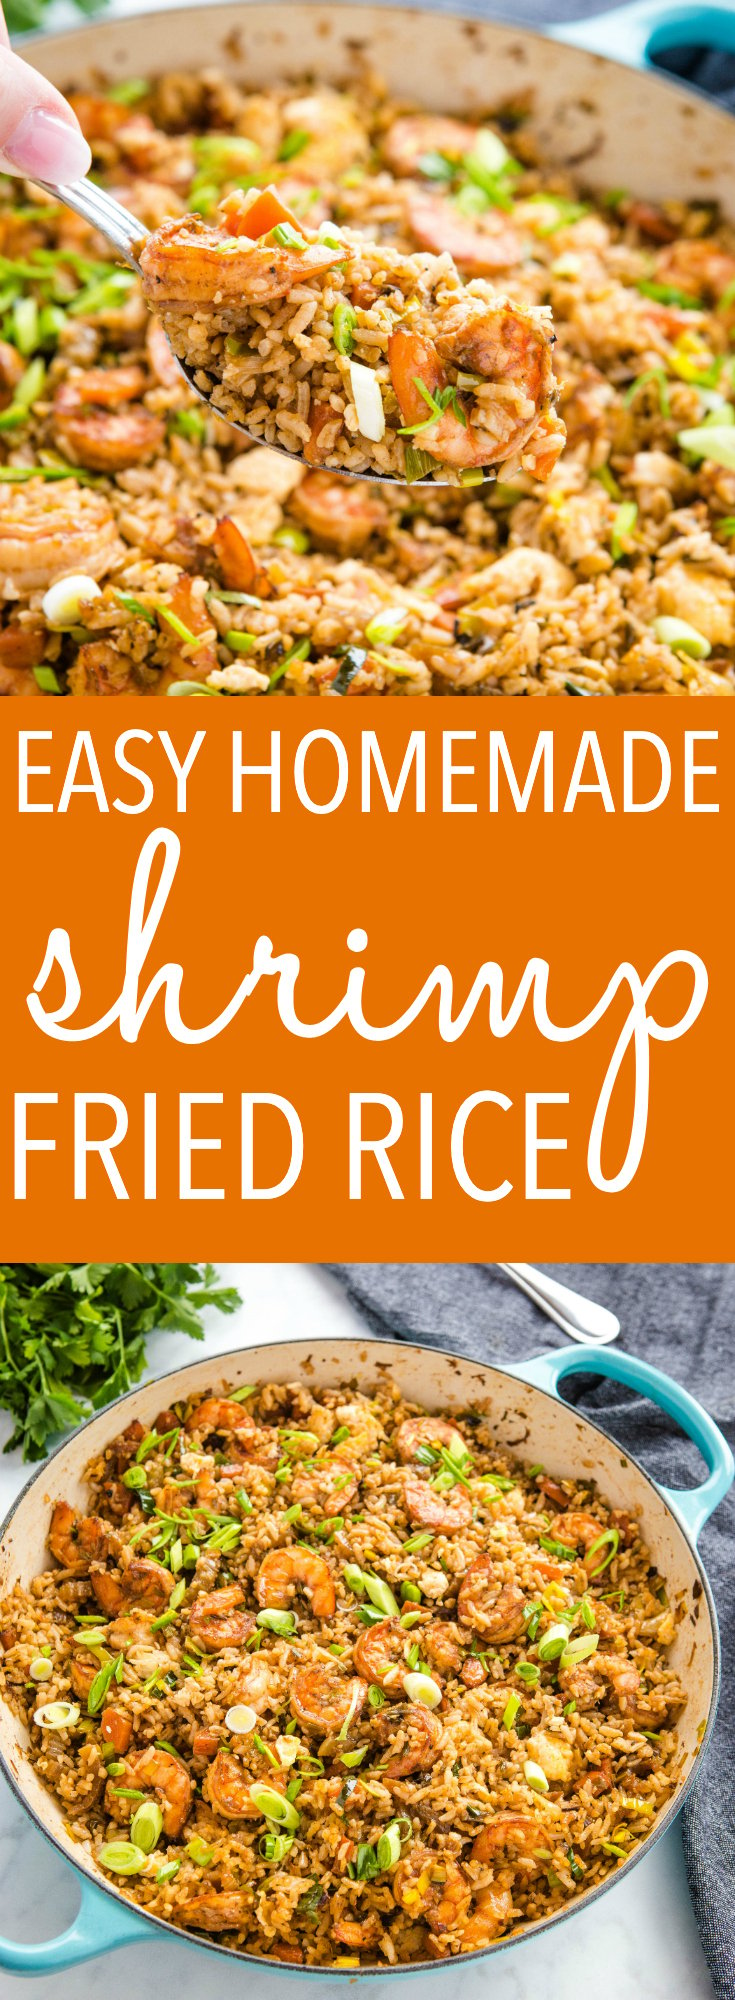 Easy One Pan Shrimp Fried Rice Recipe Pinterest 